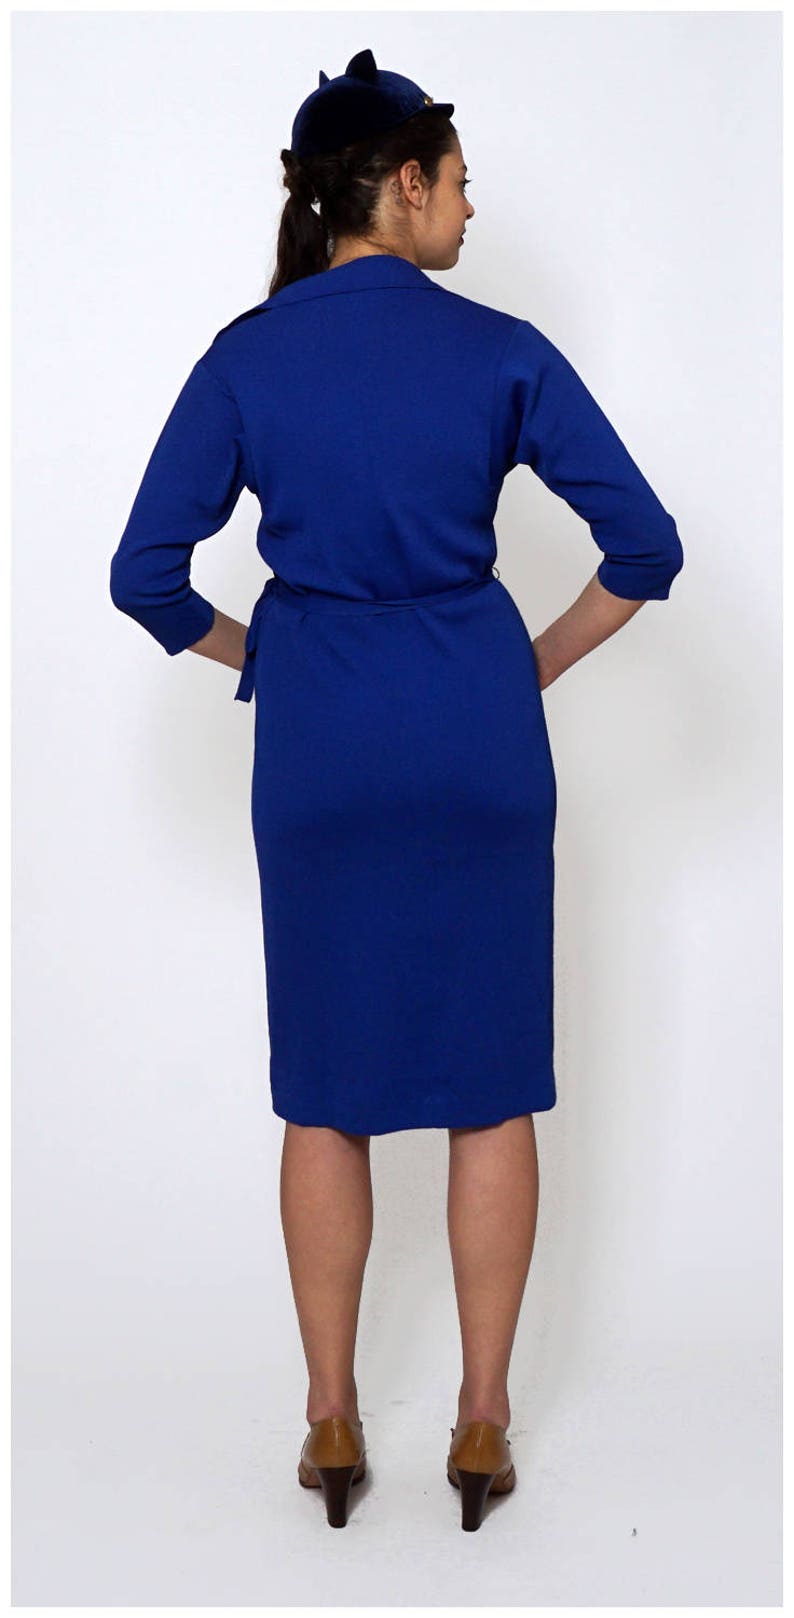 Vintage 1960s Royal Blue Knit Dress by Kimberly | Etsy